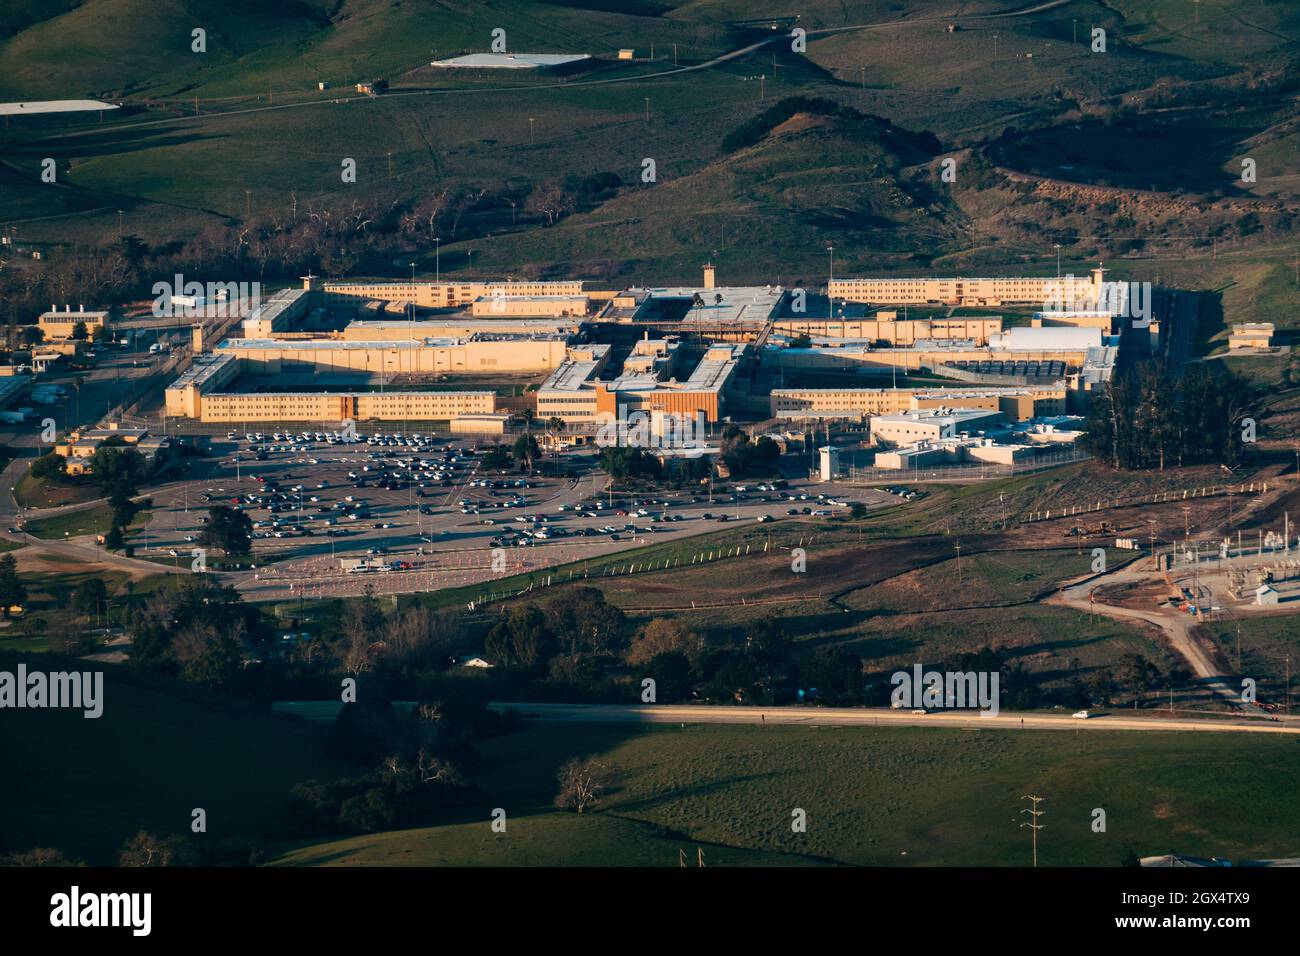 Aerial view of the California Men's Colony prison in San Luis Obispo Stock Photo